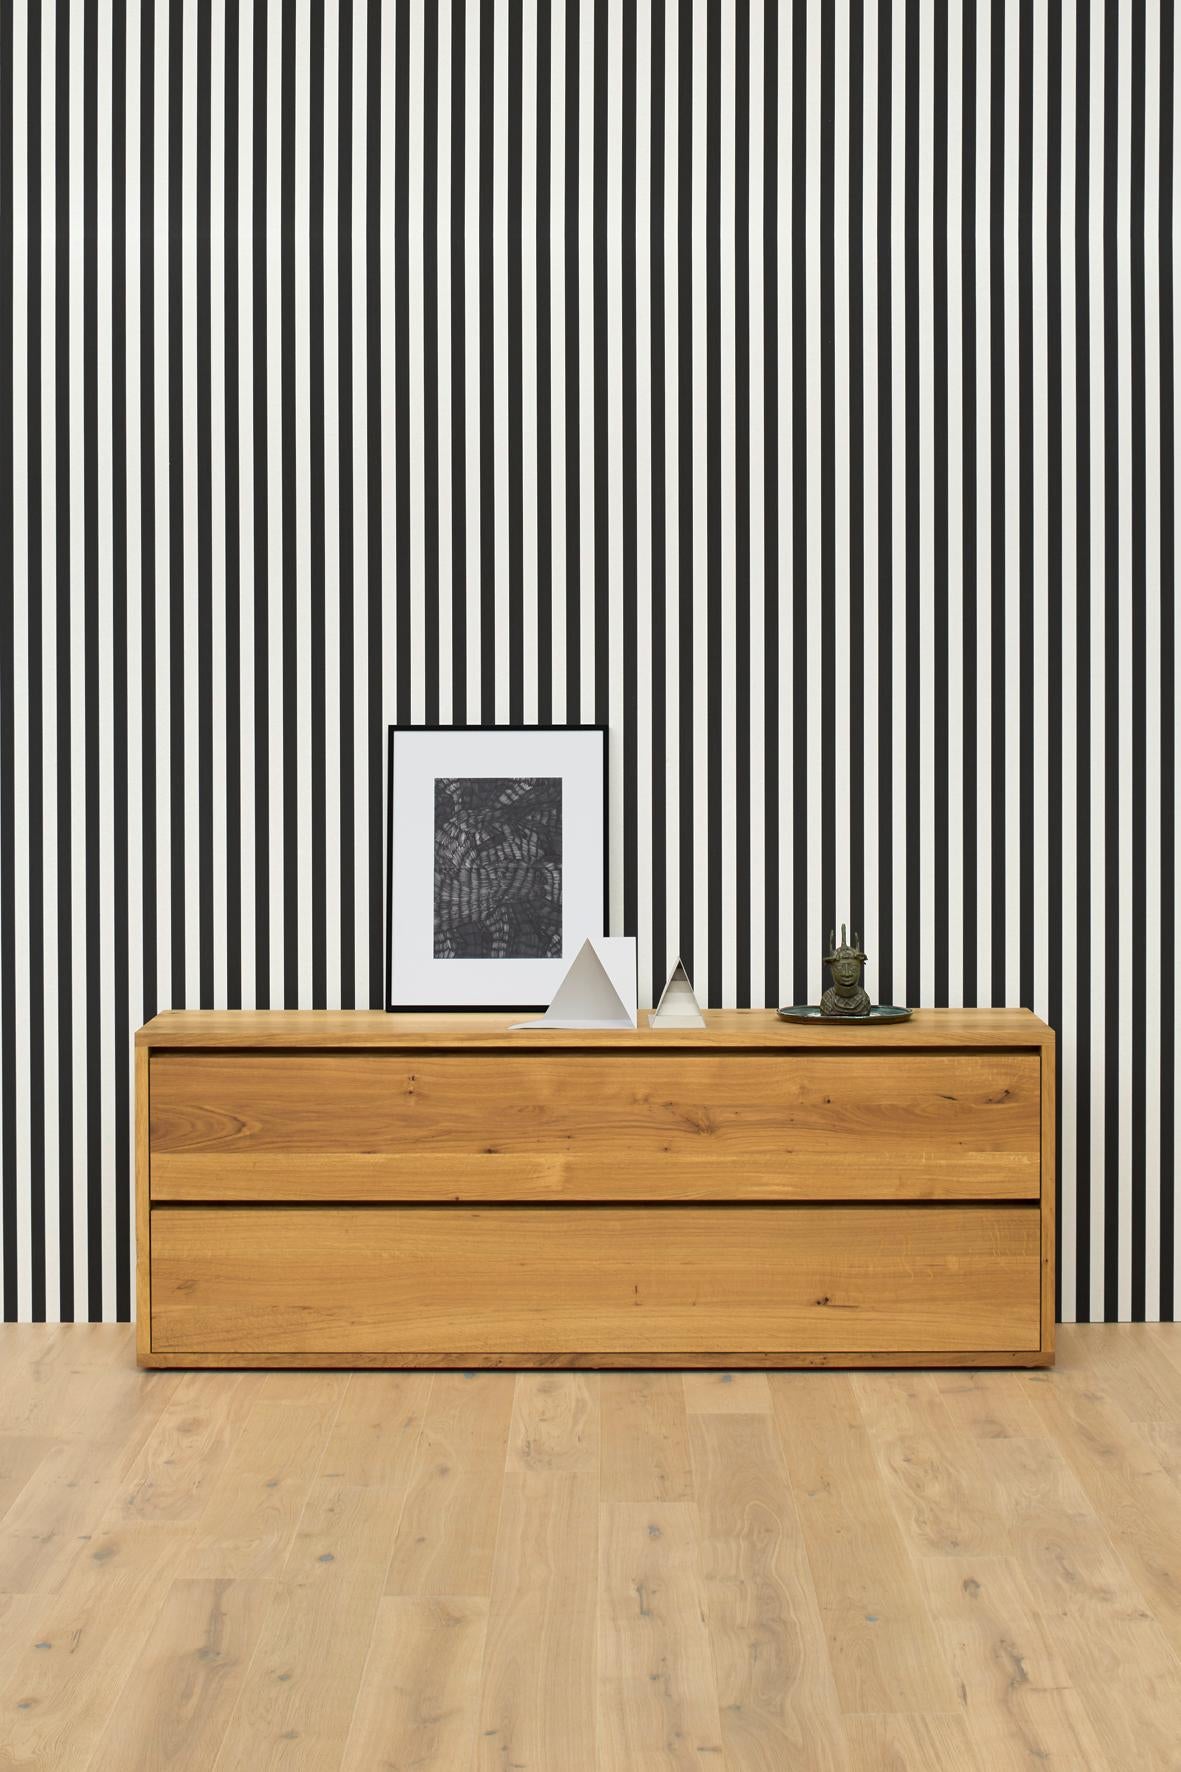 La commode IMARI en bois massif exprime la simplicité raffinée d'e15 associée à la qualité de l'artisanat dans ses meubles. IMARI se marie superbement avec les lits MO ou NOAH.

Veuillez vous renseigner sur les autres finitions et tailles, car